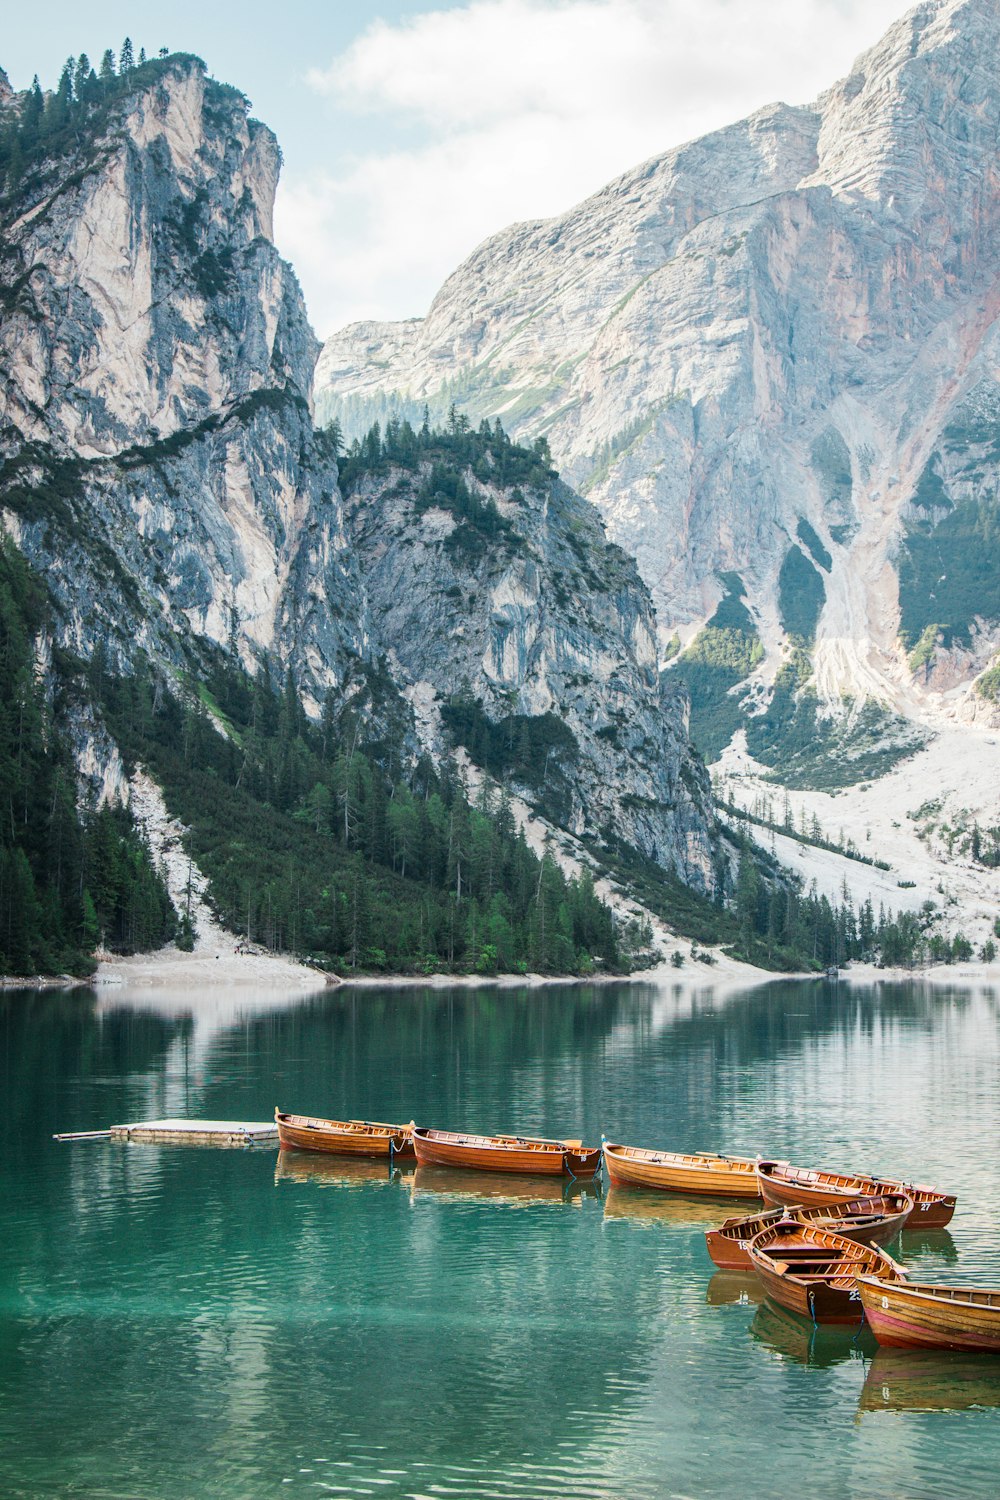 Un grupo de canoas flotando en la cima de un lago